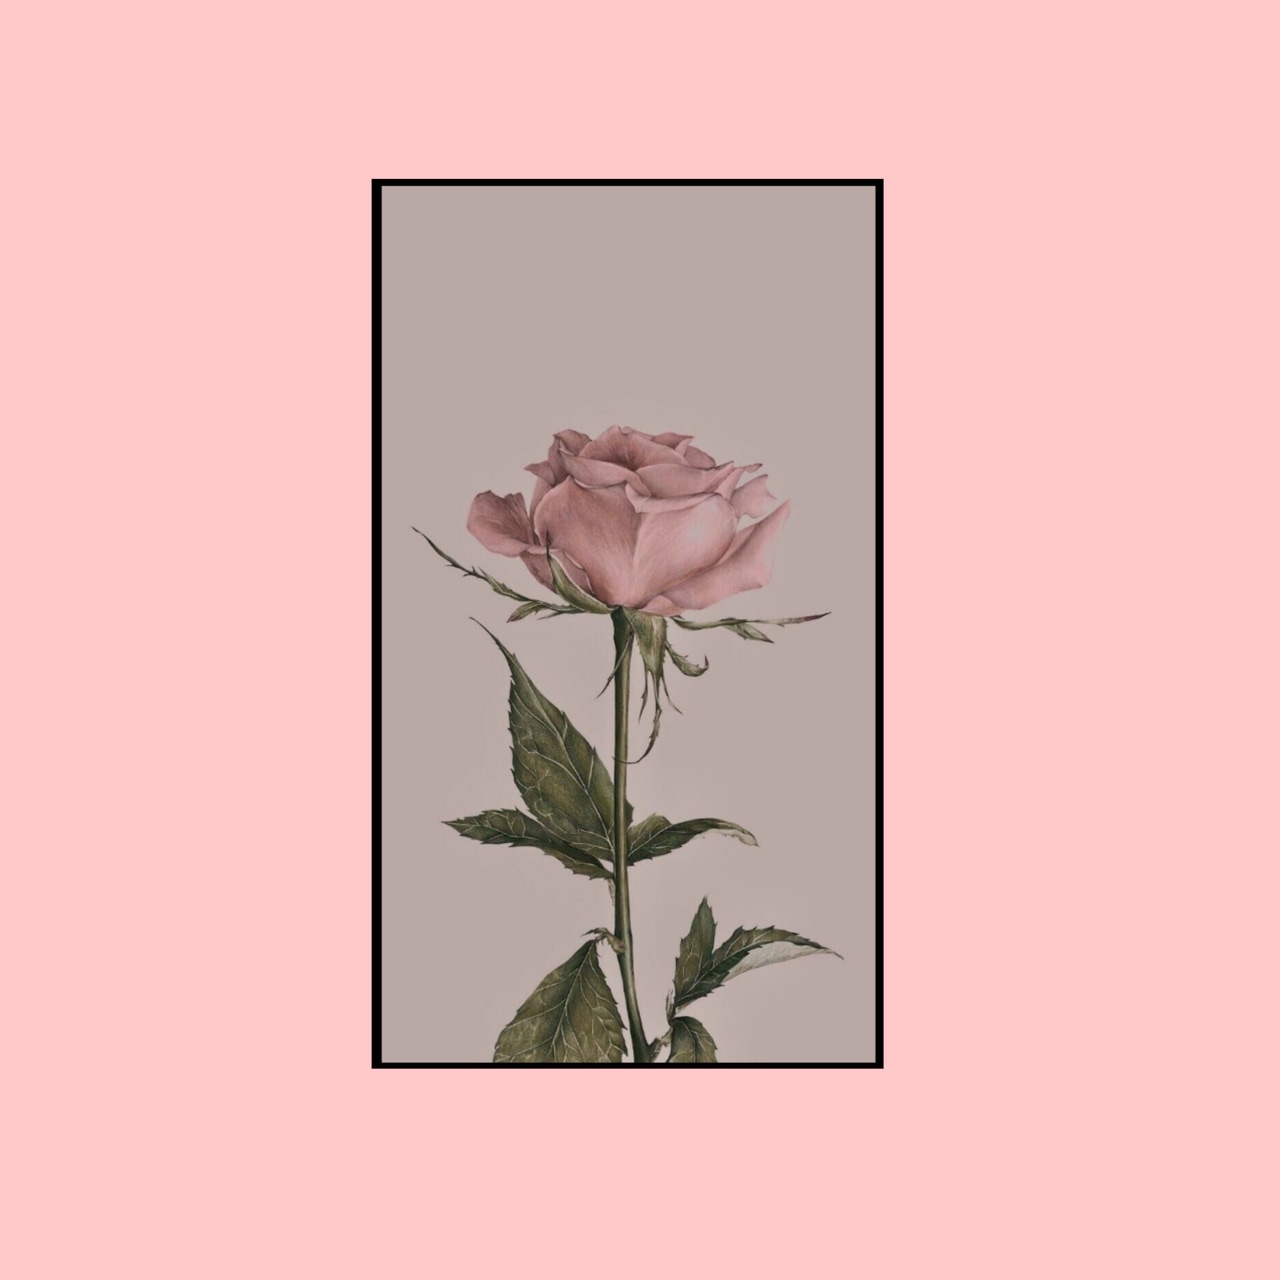 Flowers, Wallpaper, And 🌷 Image - Hintergrundbilder Blumen - 1280x1280 ...